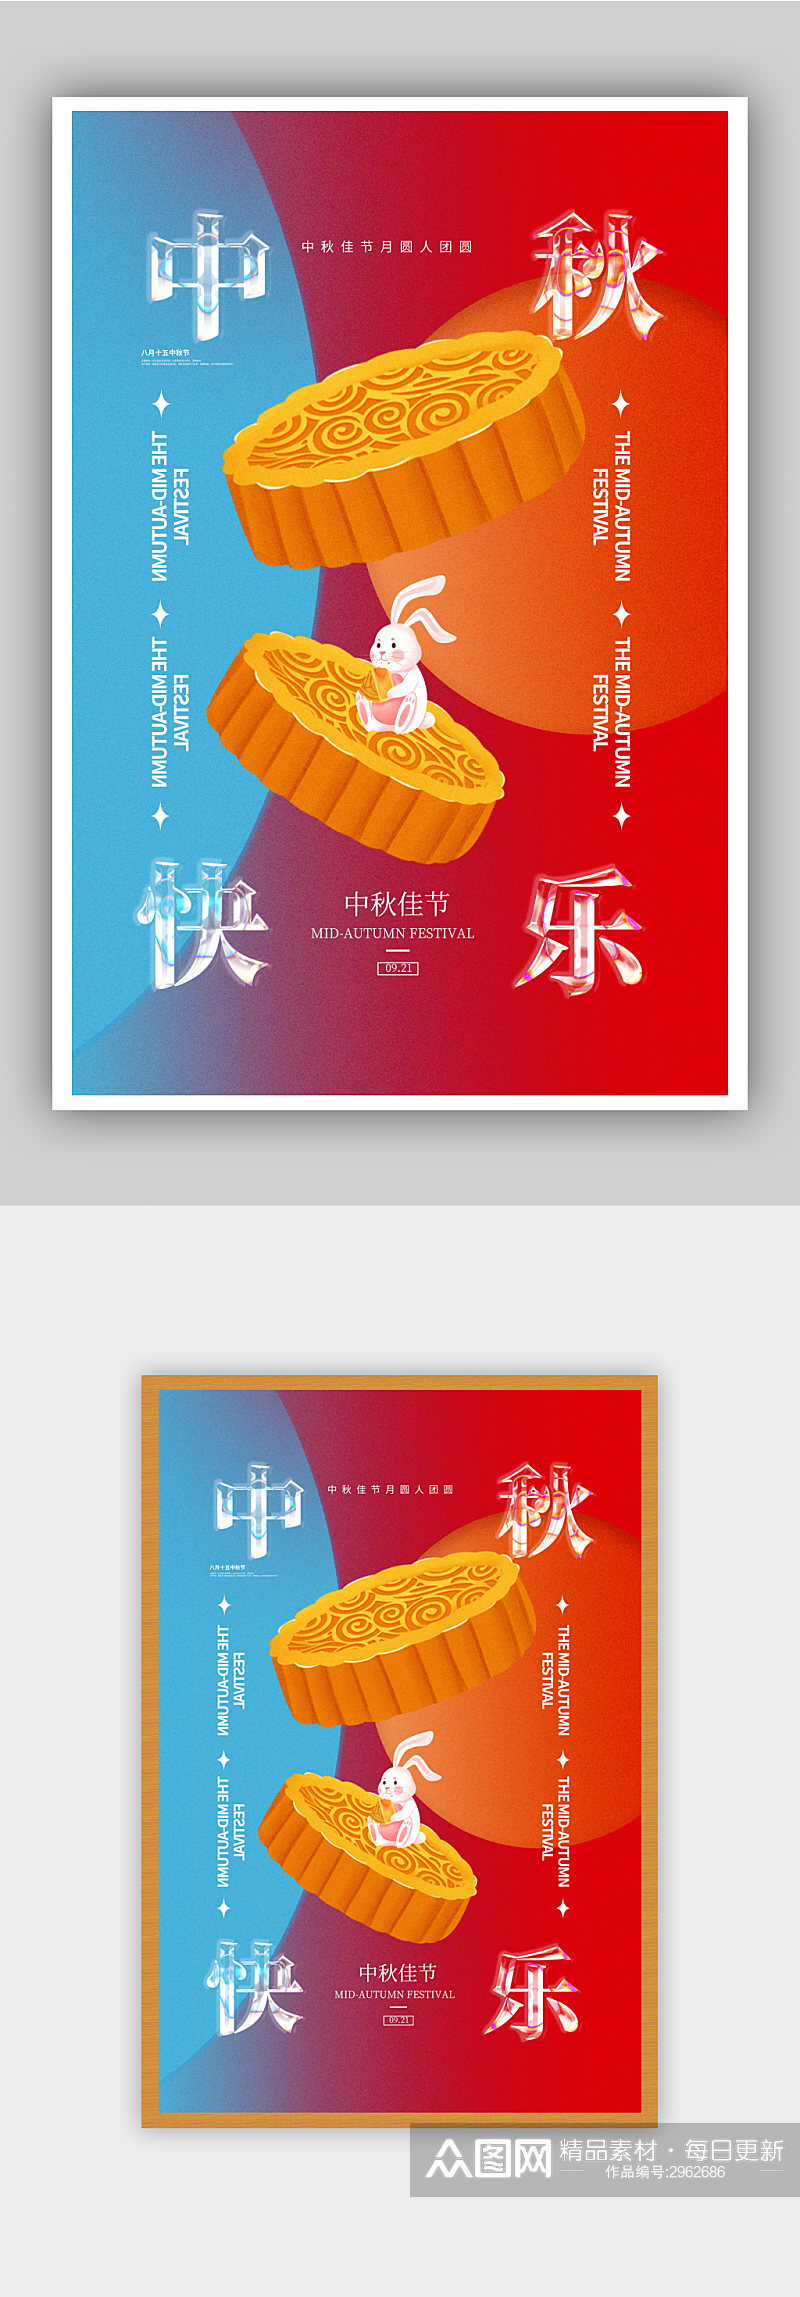 玻璃字体中秋节快乐海报素材